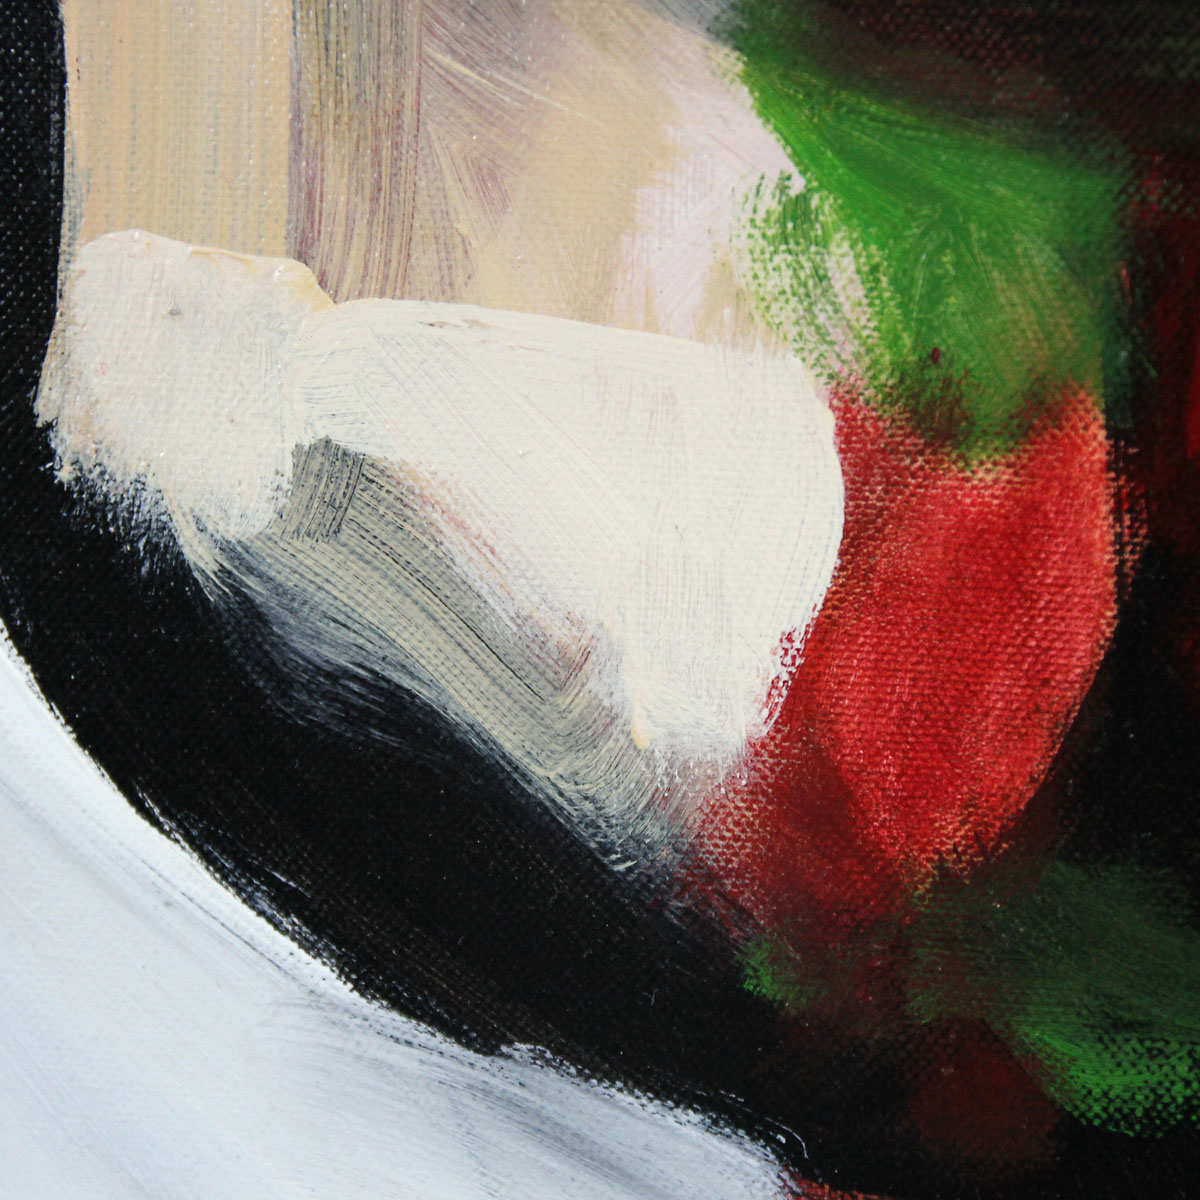 Neoexpressionistische Malerei von J.J. Piezanowski: "Un coeur toujours vierge" (A)